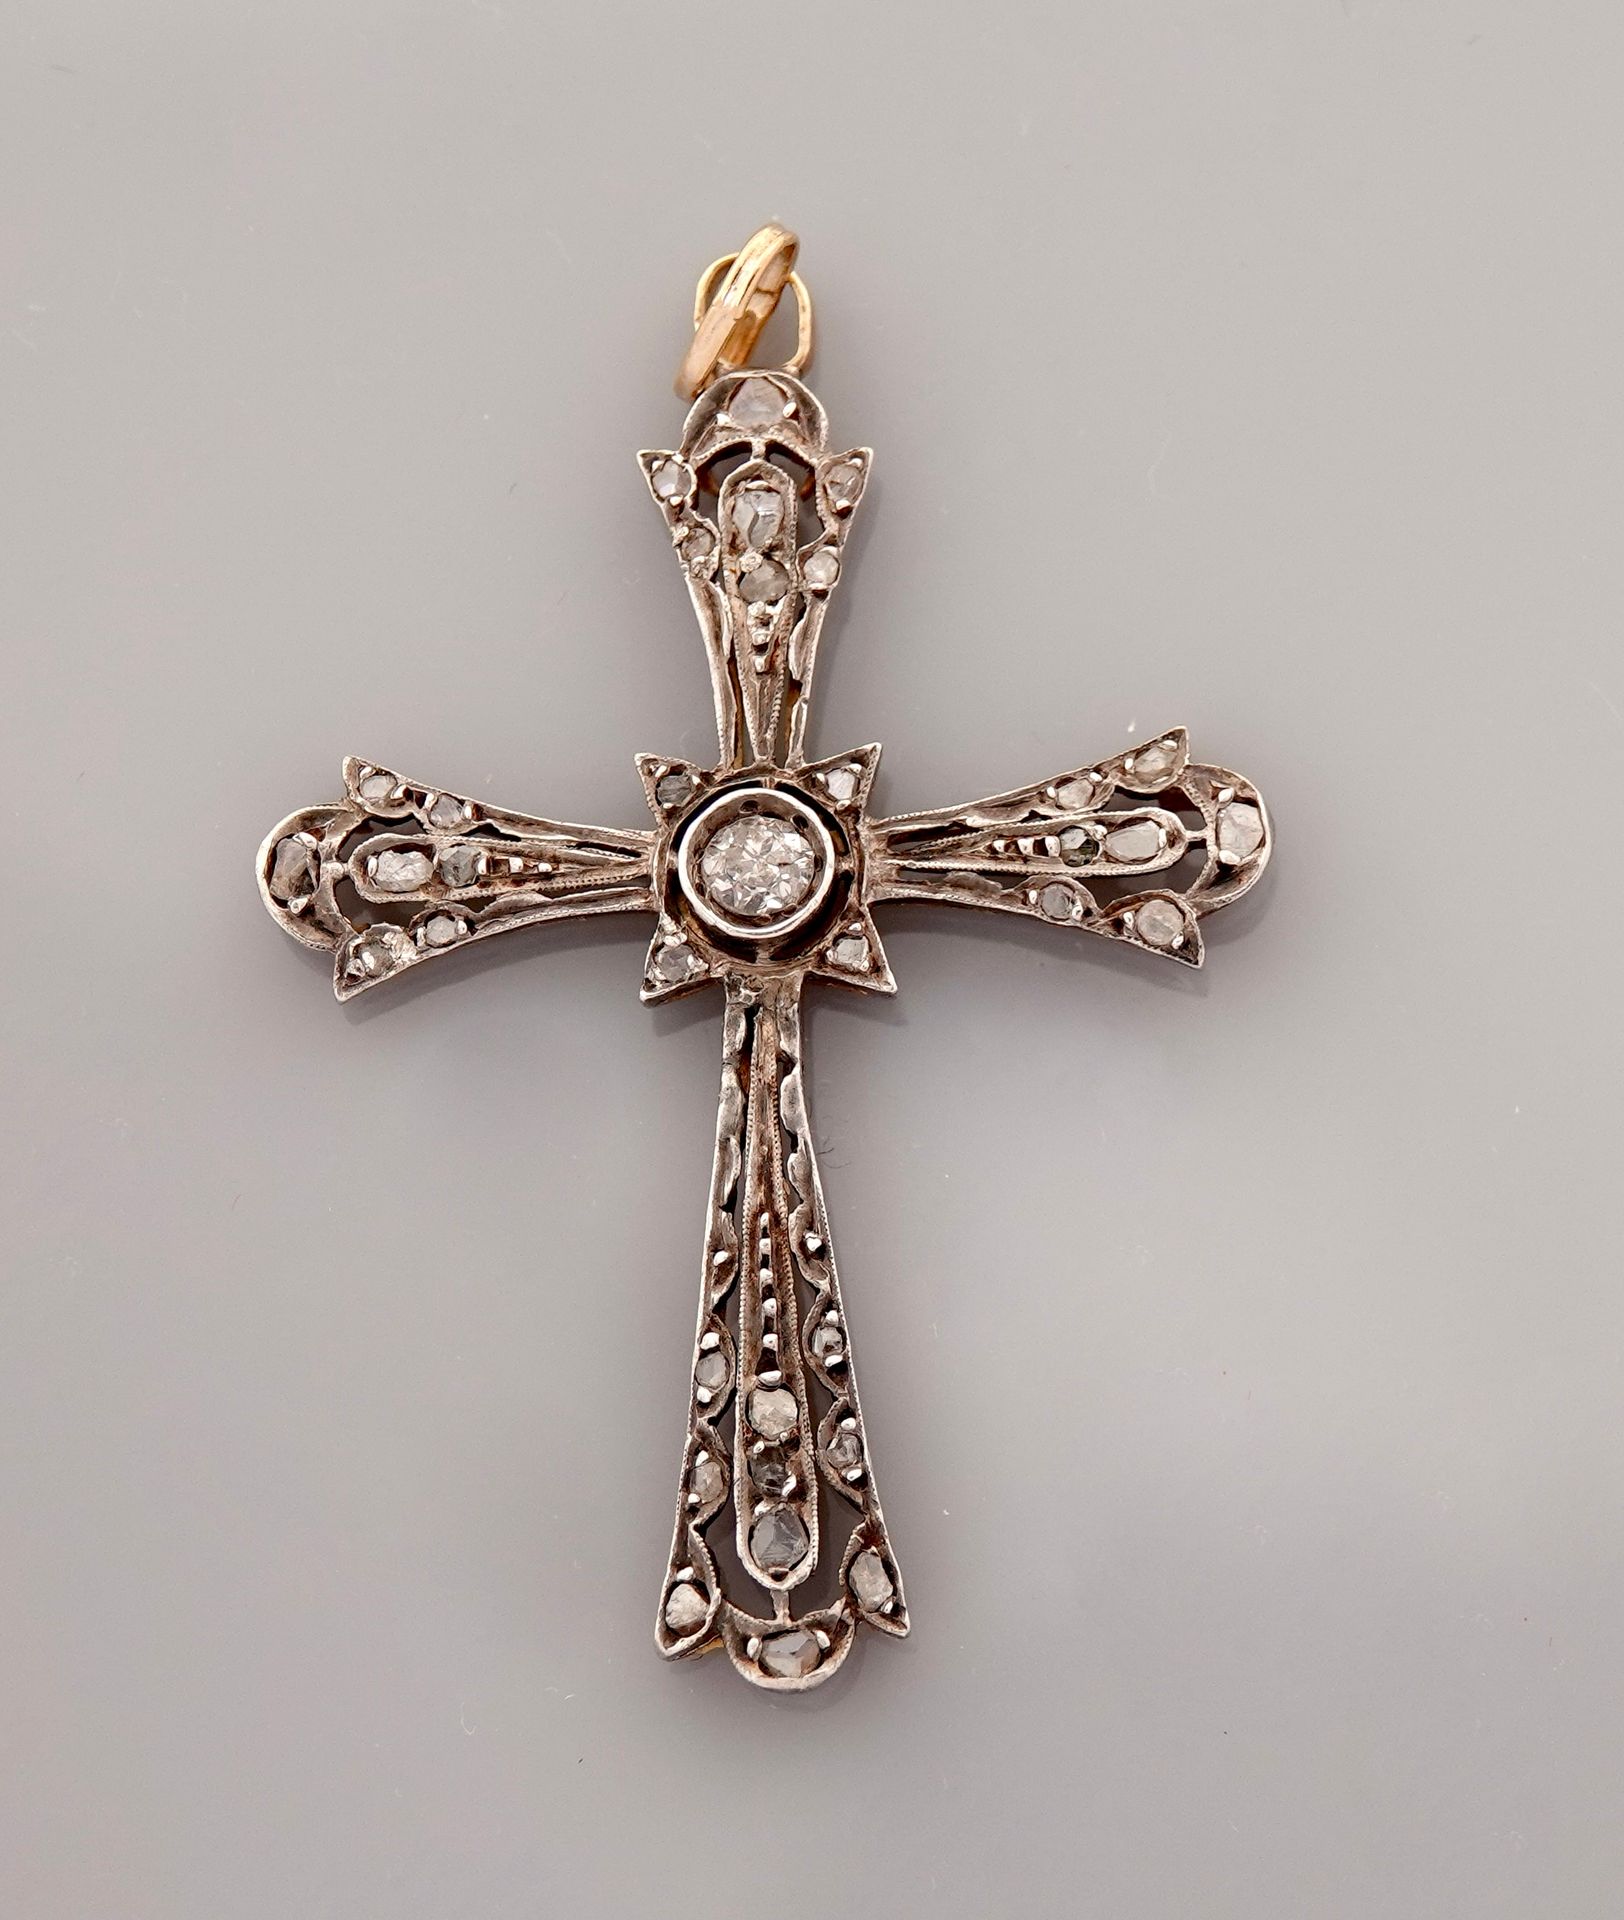 Null 925毫米银和黄金十字架吊坠，585毫米，镶有钻石，尺寸为4 x 3厘米，约1900年，重量：3.3克毛重。